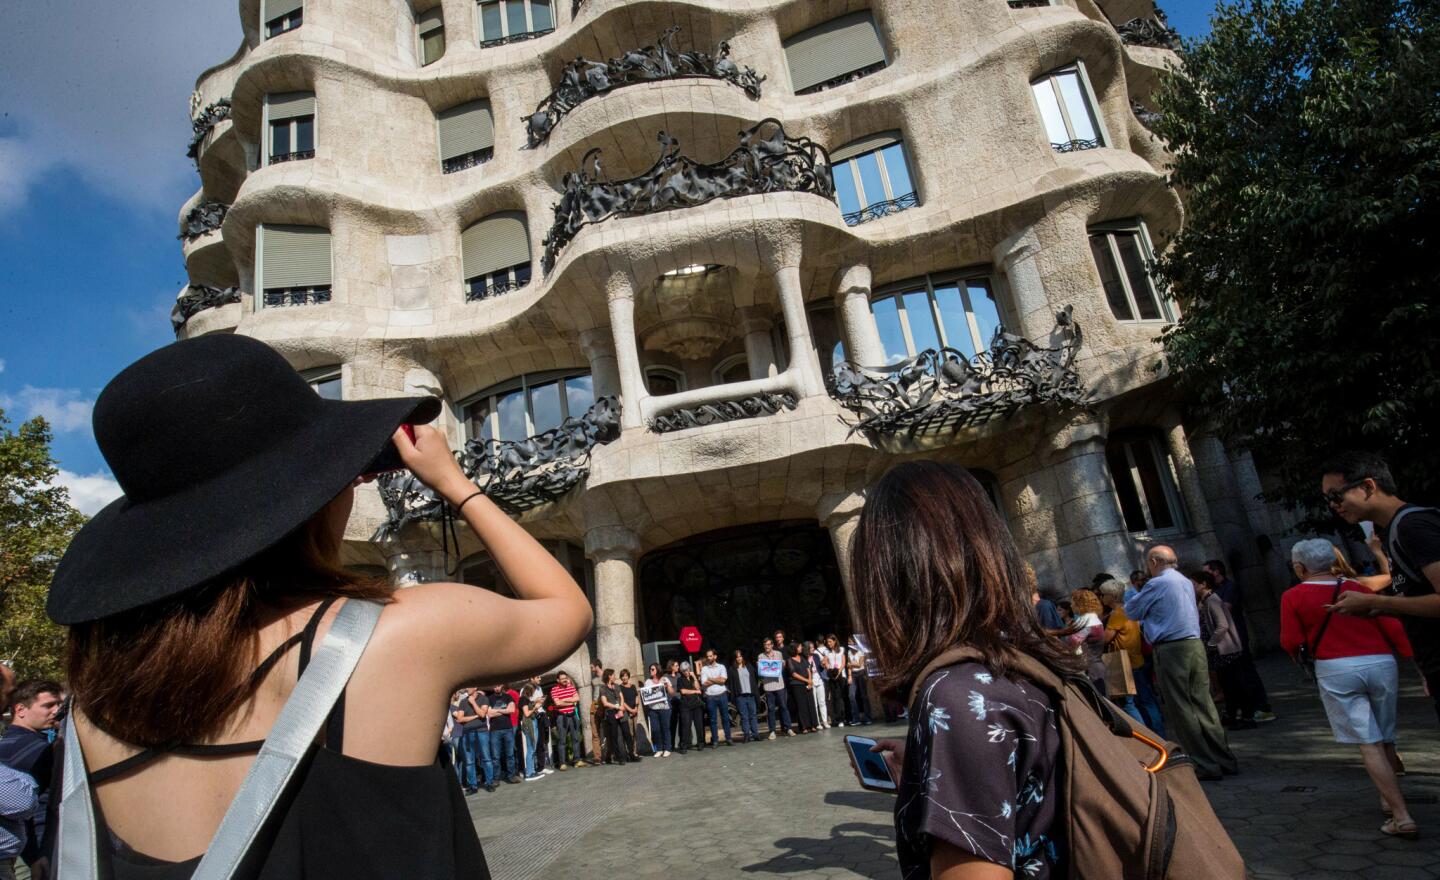 Gaudi's architecture in Barcelona